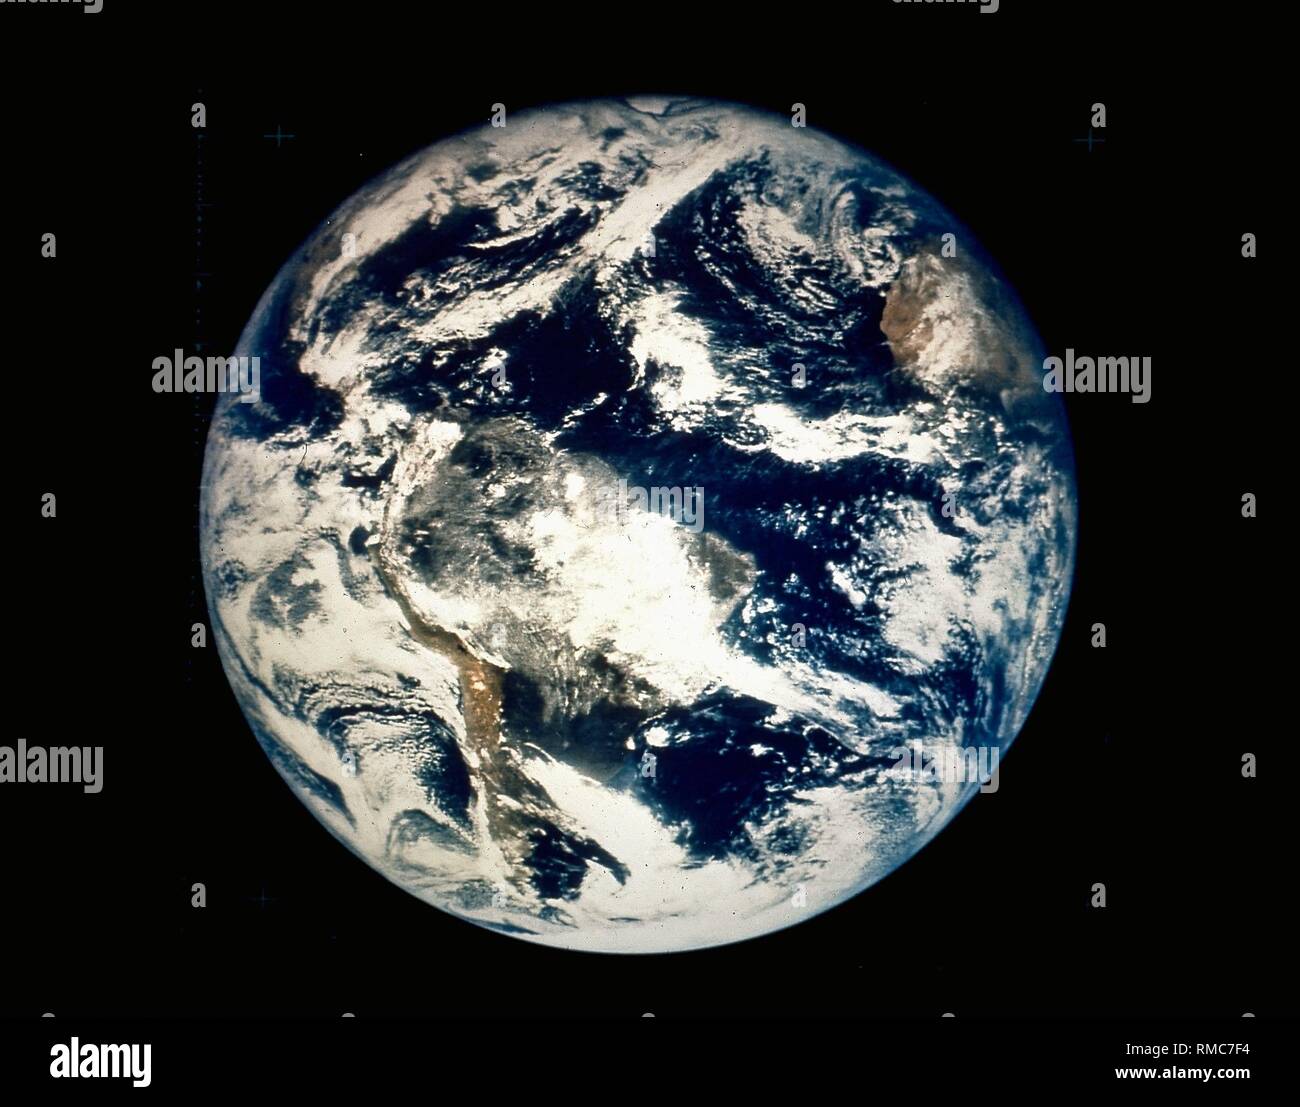 Photographié la terre comme une sphère solide de l'espace au-dessus du Brésil / Équateur par le satellite géostationnaire. Les continents de l'Amérique latine et une partie de l'Afrique (position 2 suis) peuvent également être reconnues. Photo non datée, probablement à partir des années 1980. Banque D'Images